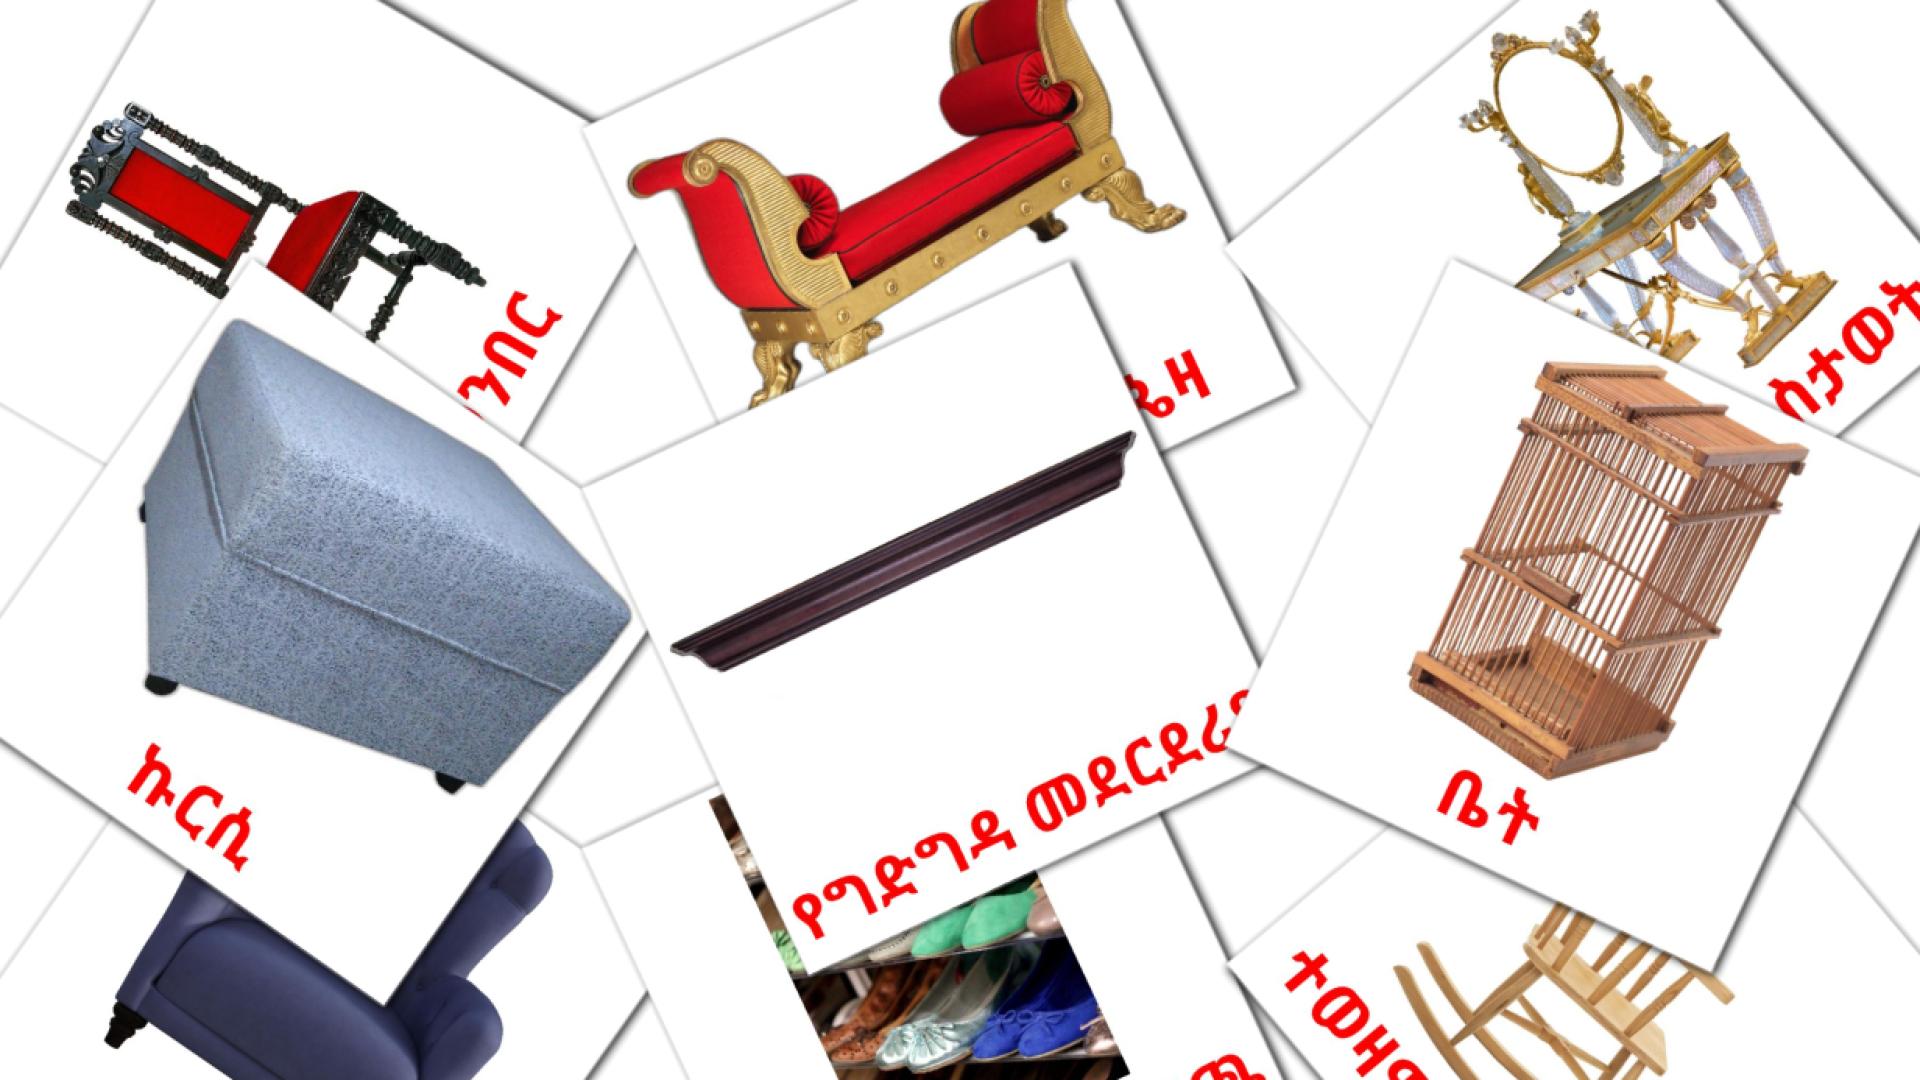 Möbel - Amharische Vokabelkarten